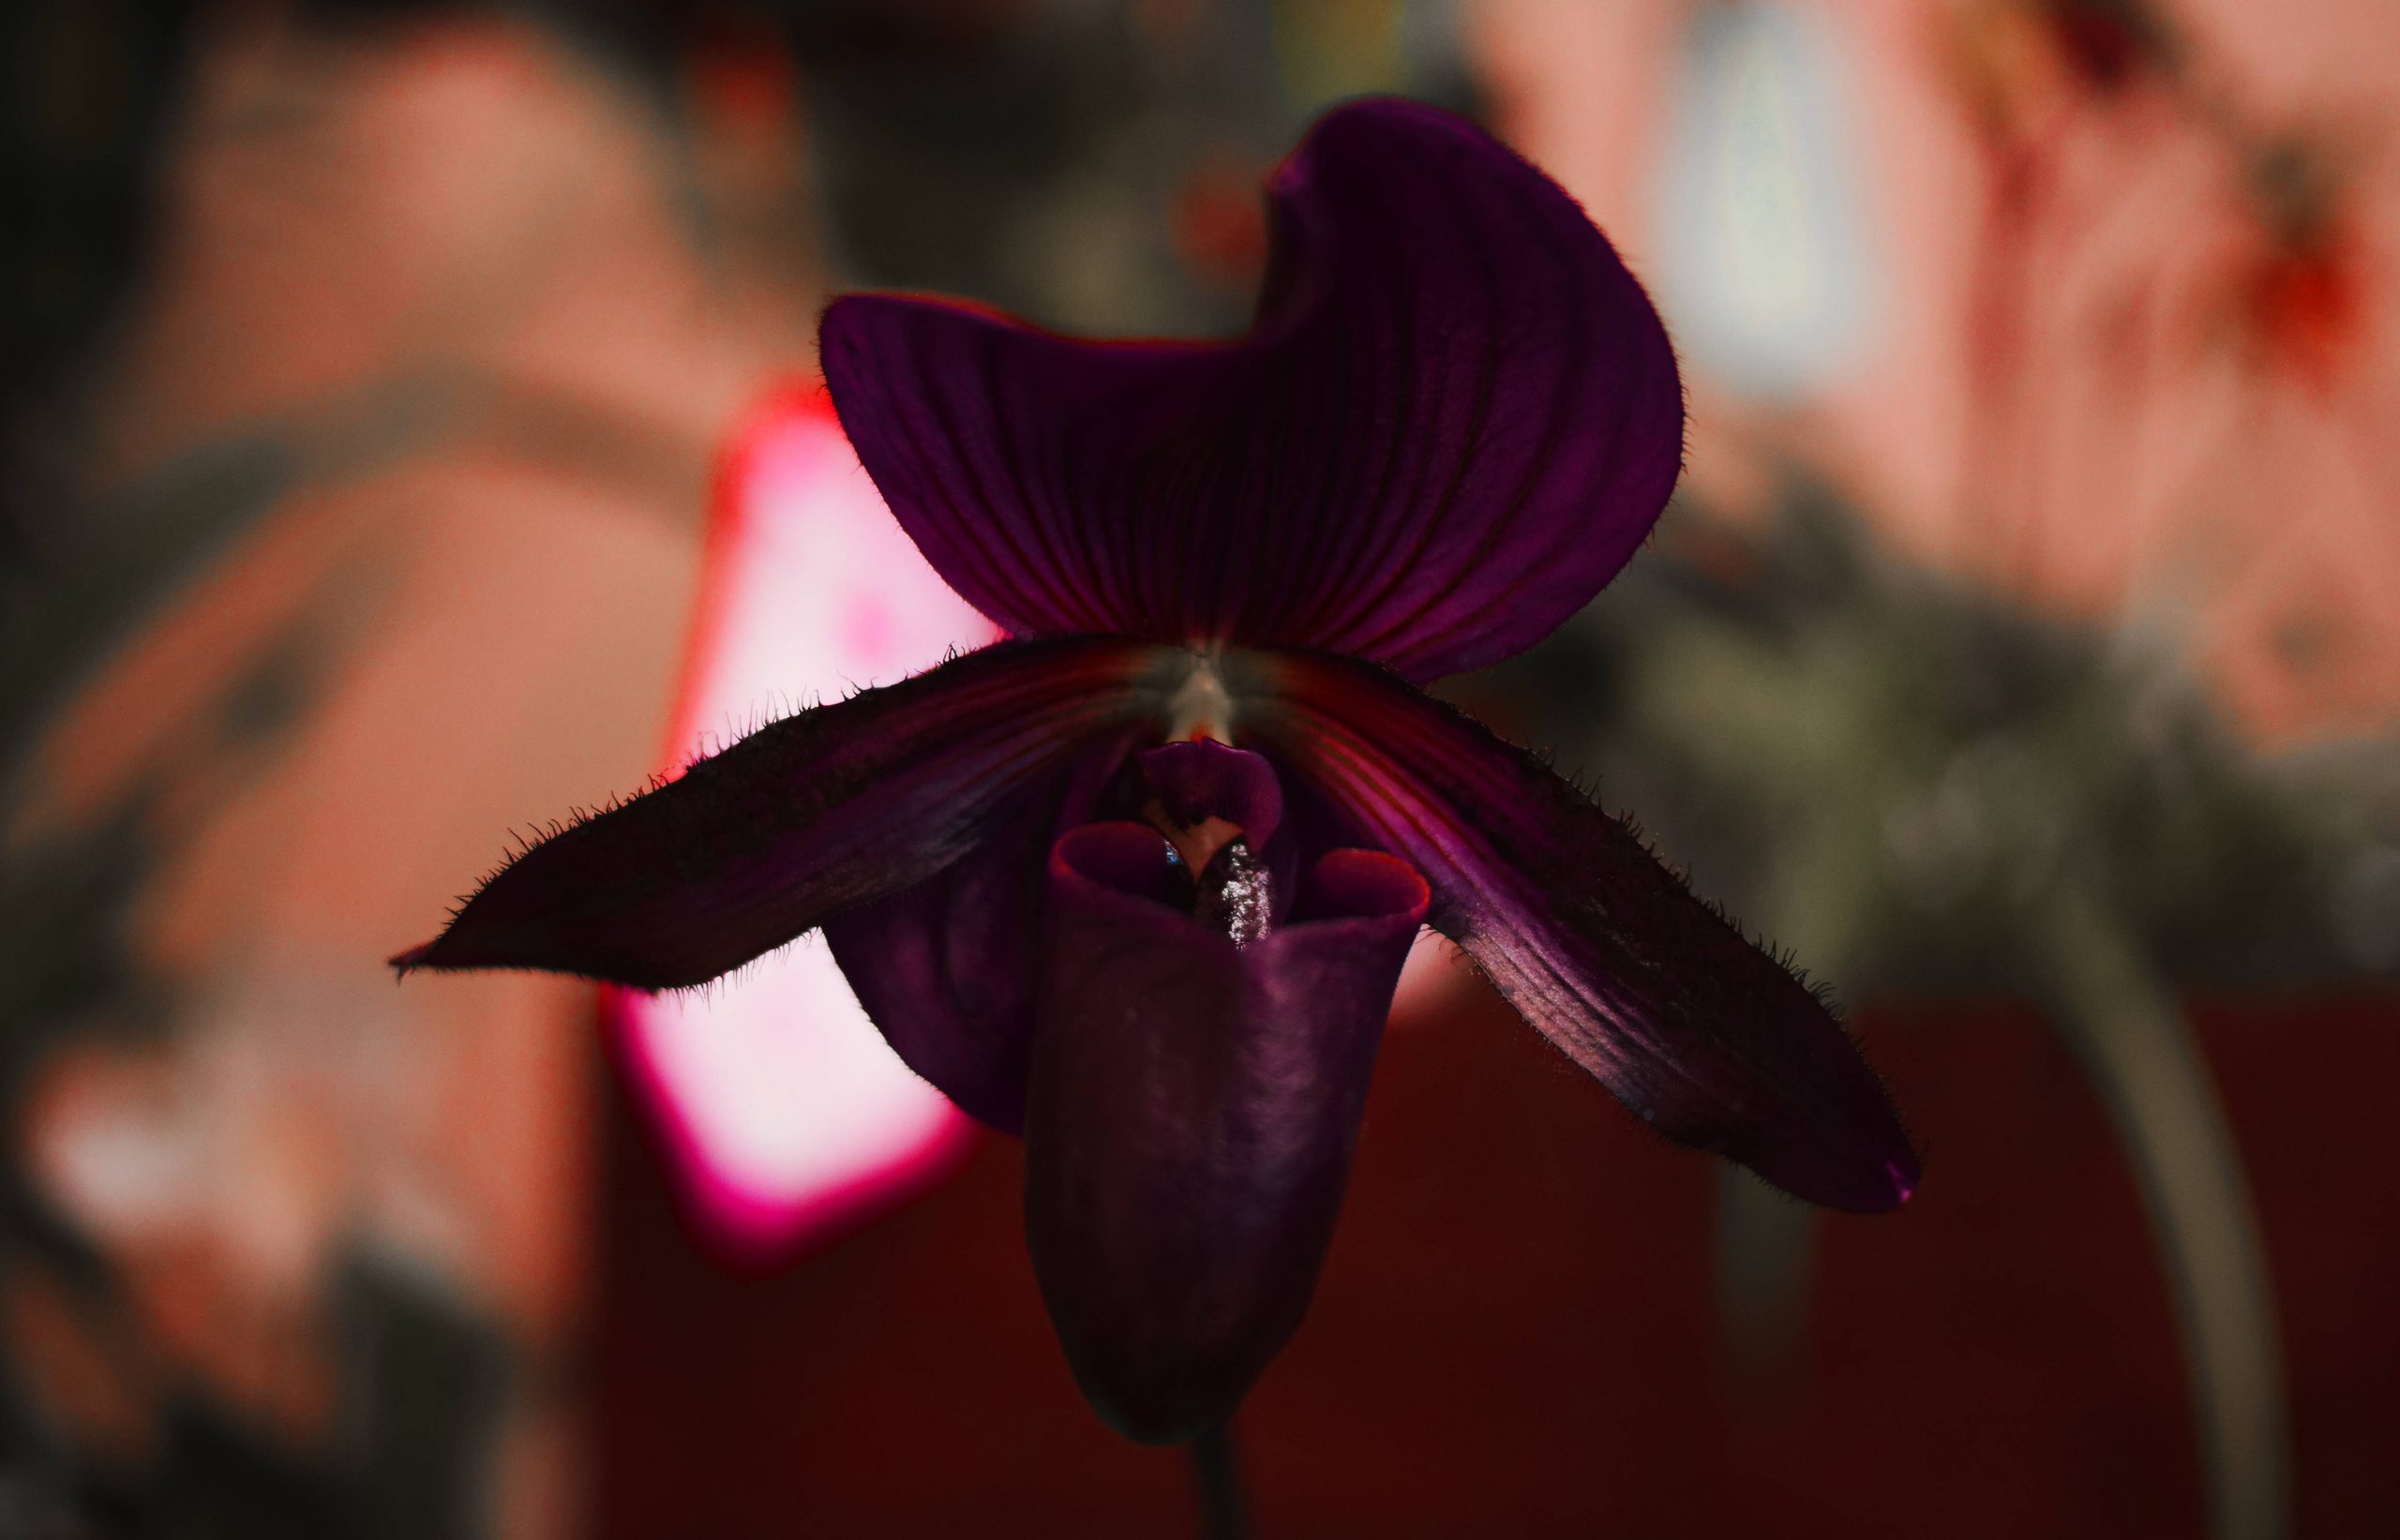 Il prodigio botanico dell'Orchidea Nera nella nuova Limited Edition Guerlain